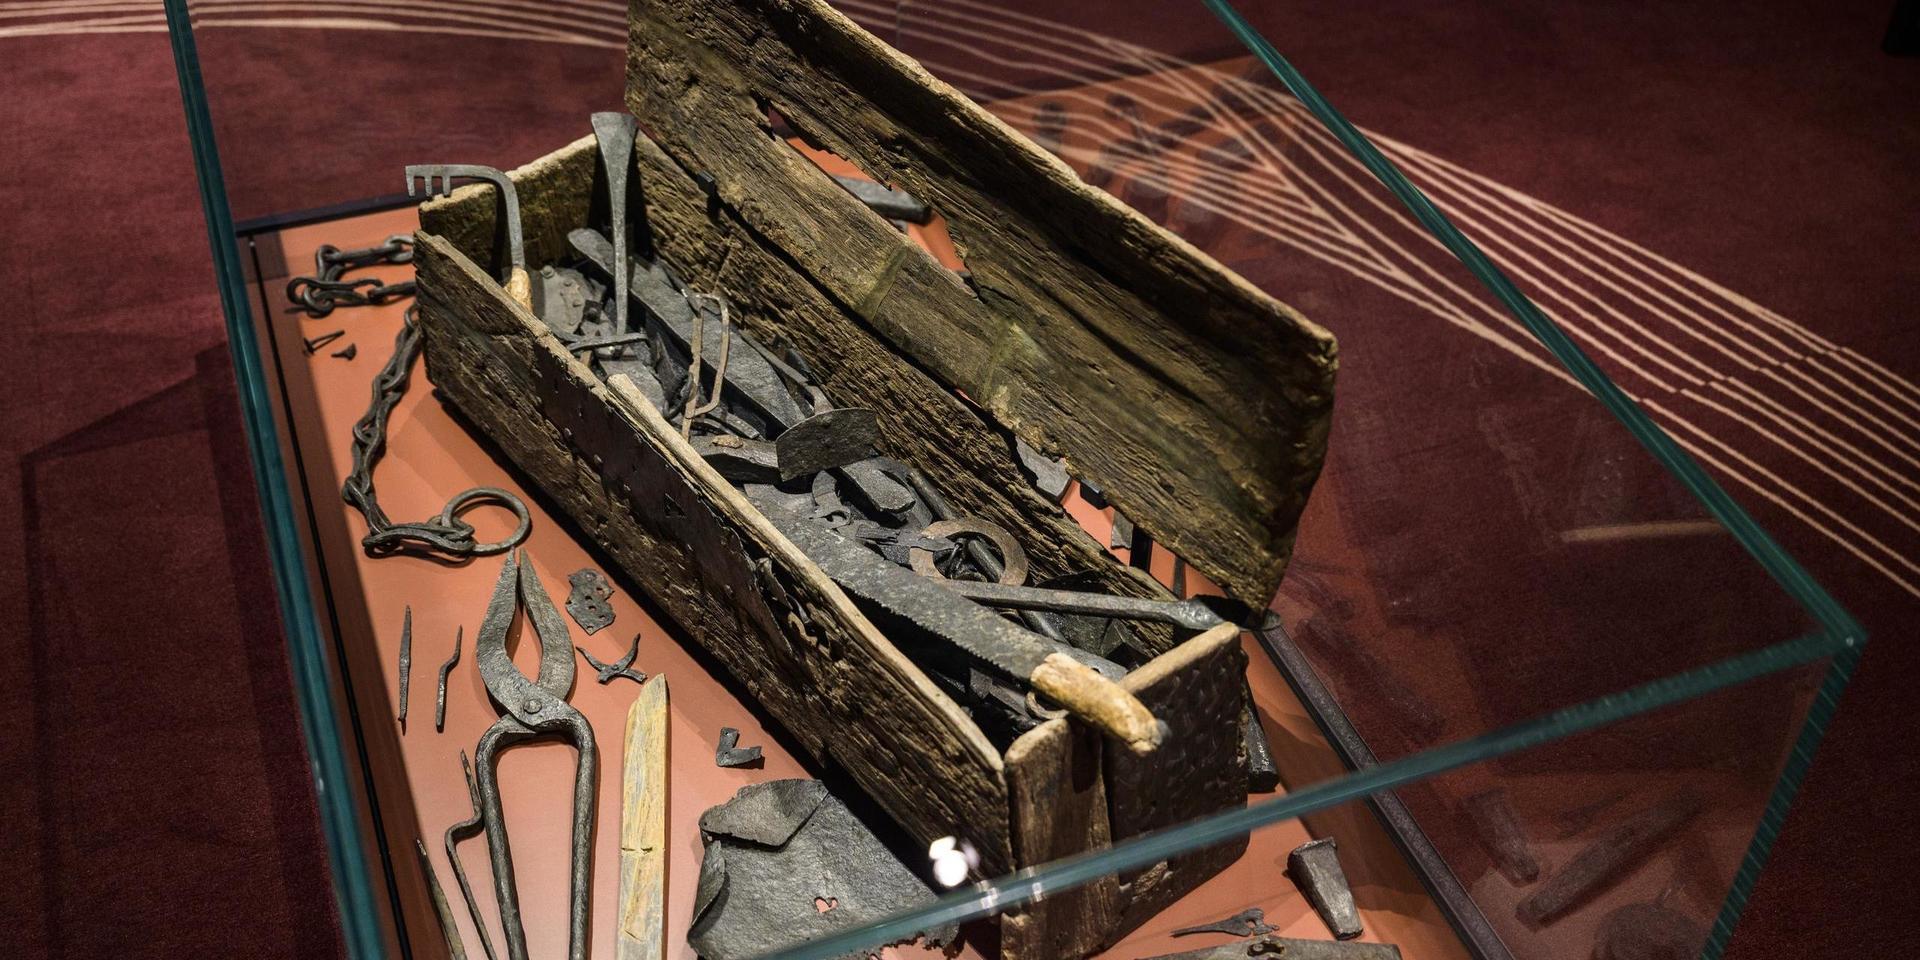 En verktygslåda från vikingatiden, som hittades vid grävningsarbeten 1936 i träskmarken Mästermyr, ett par kilometer nordväst om Hemse på Gotland. Där fanns bland annat tänger, släggor och hammare för metallhantverk och smide samt verktyg som sågar, skavjärn, raspar och yxor.